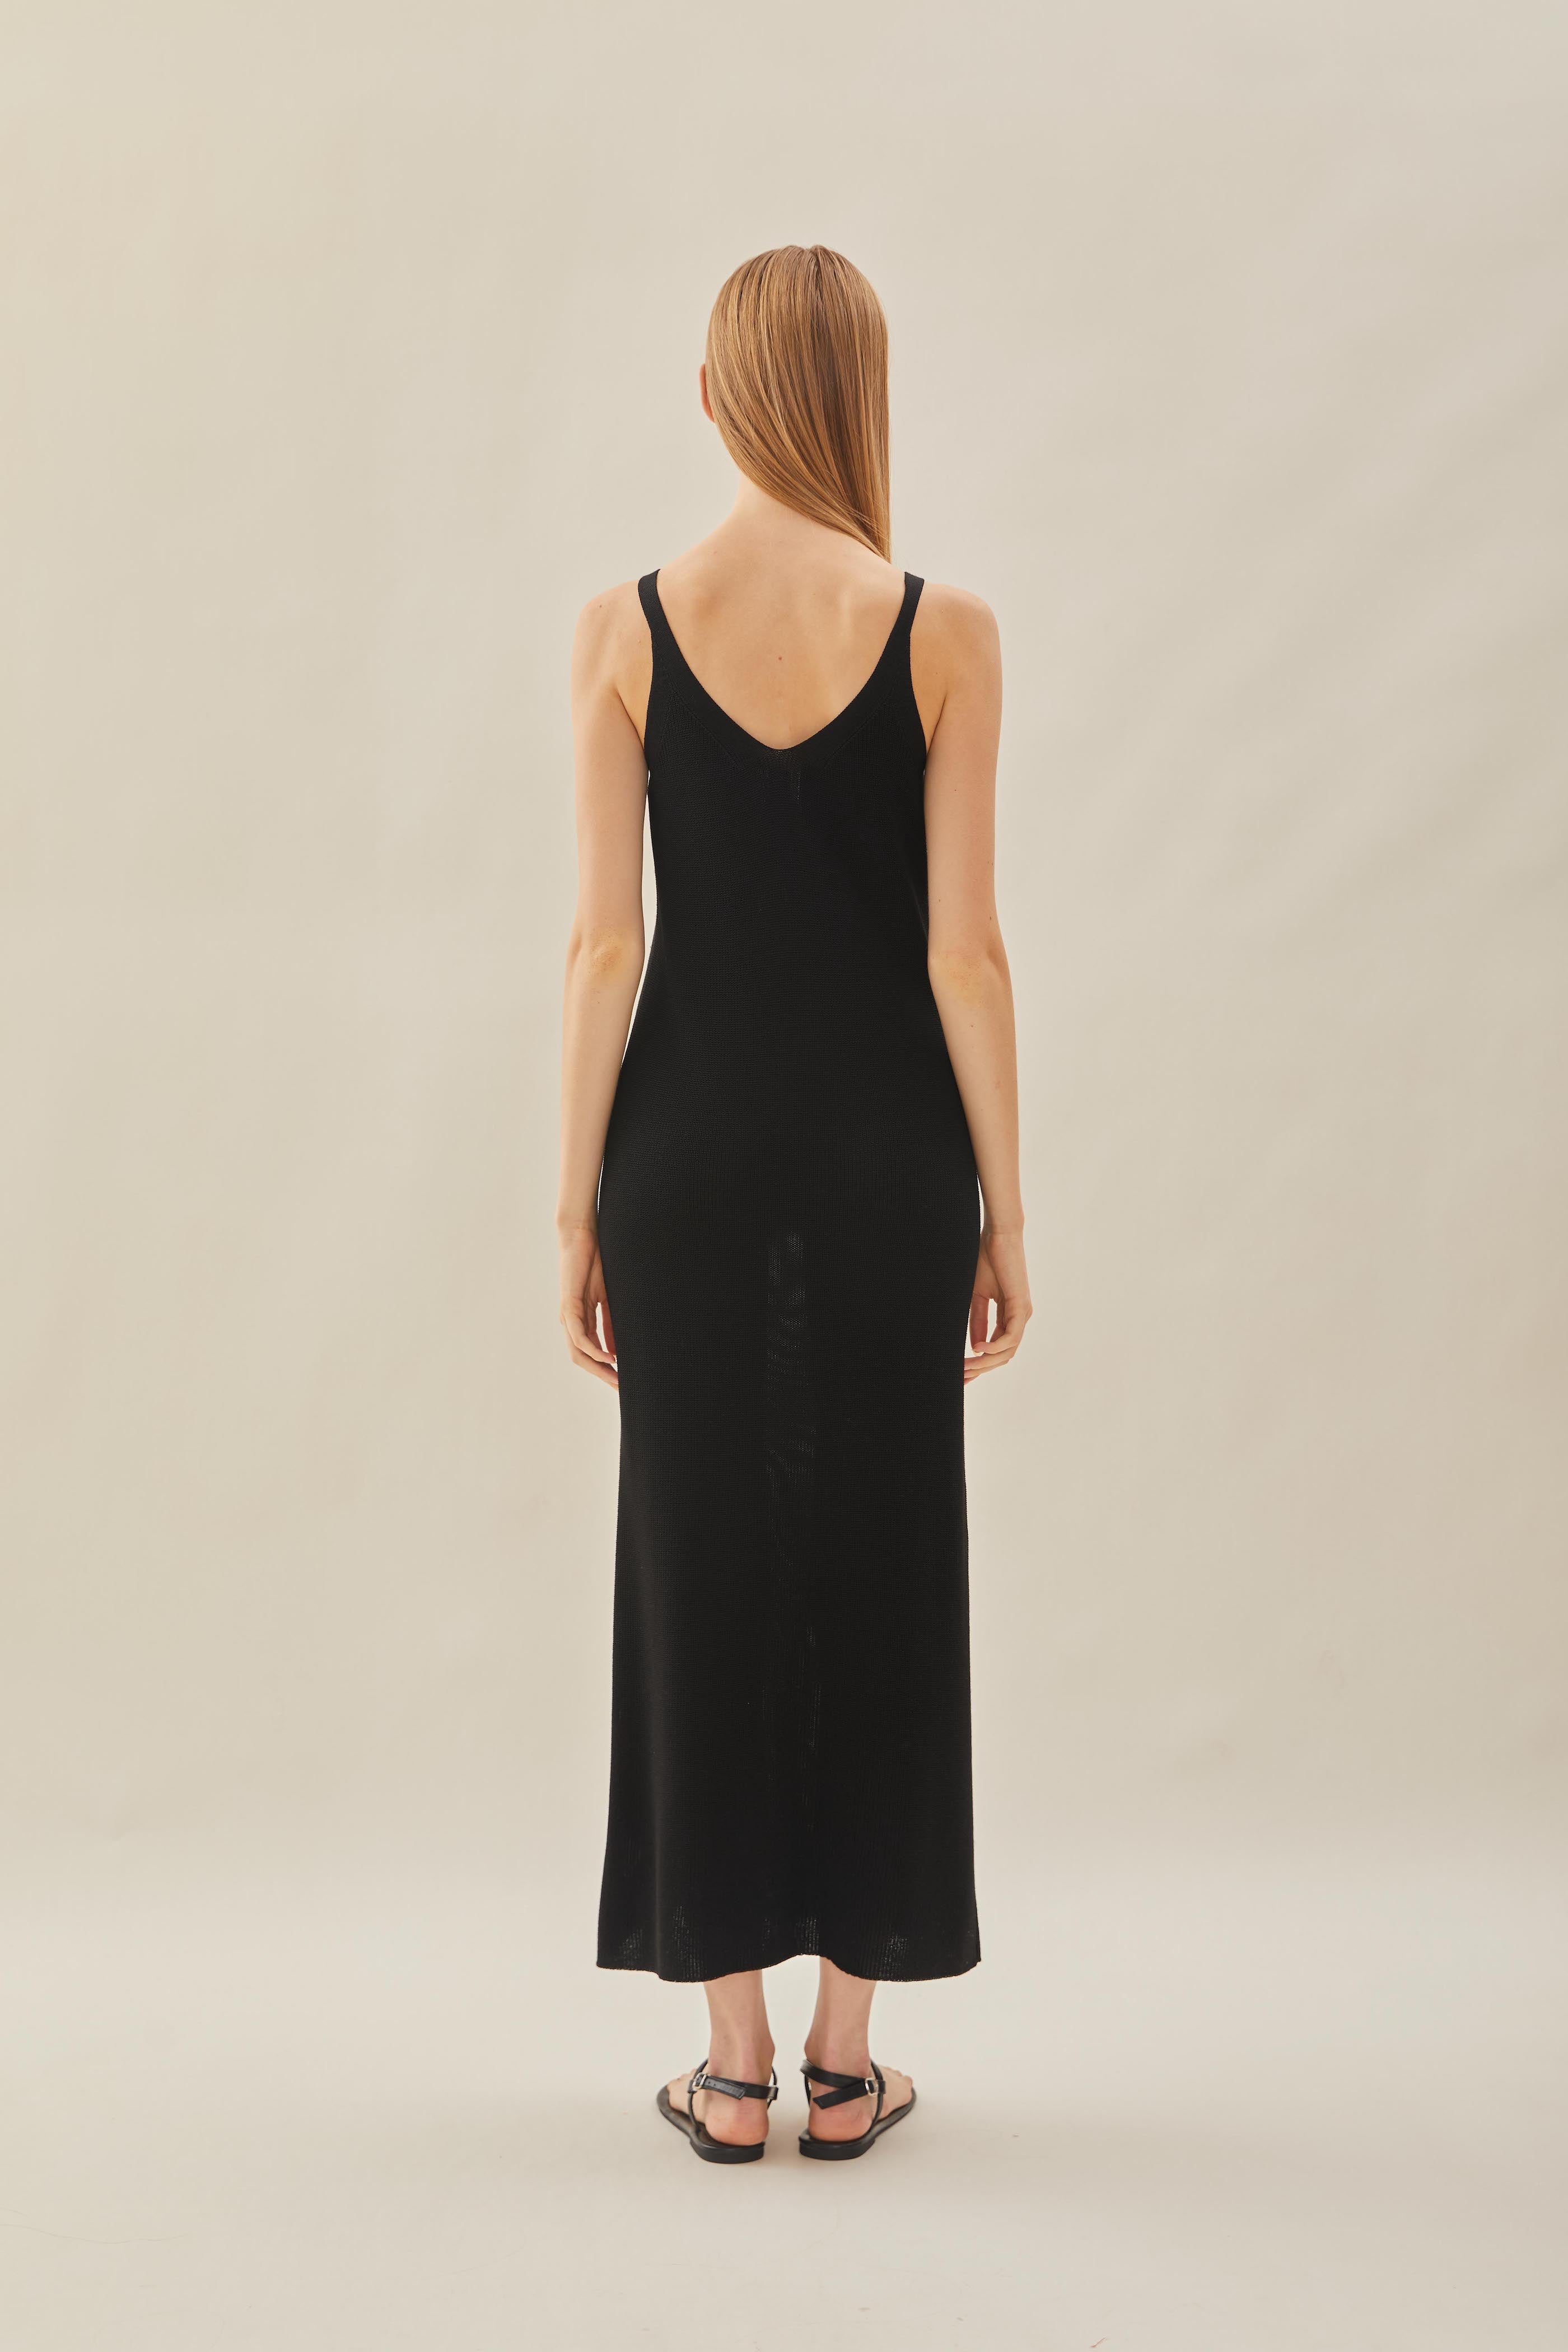 Knit V-Neck Dress in Black